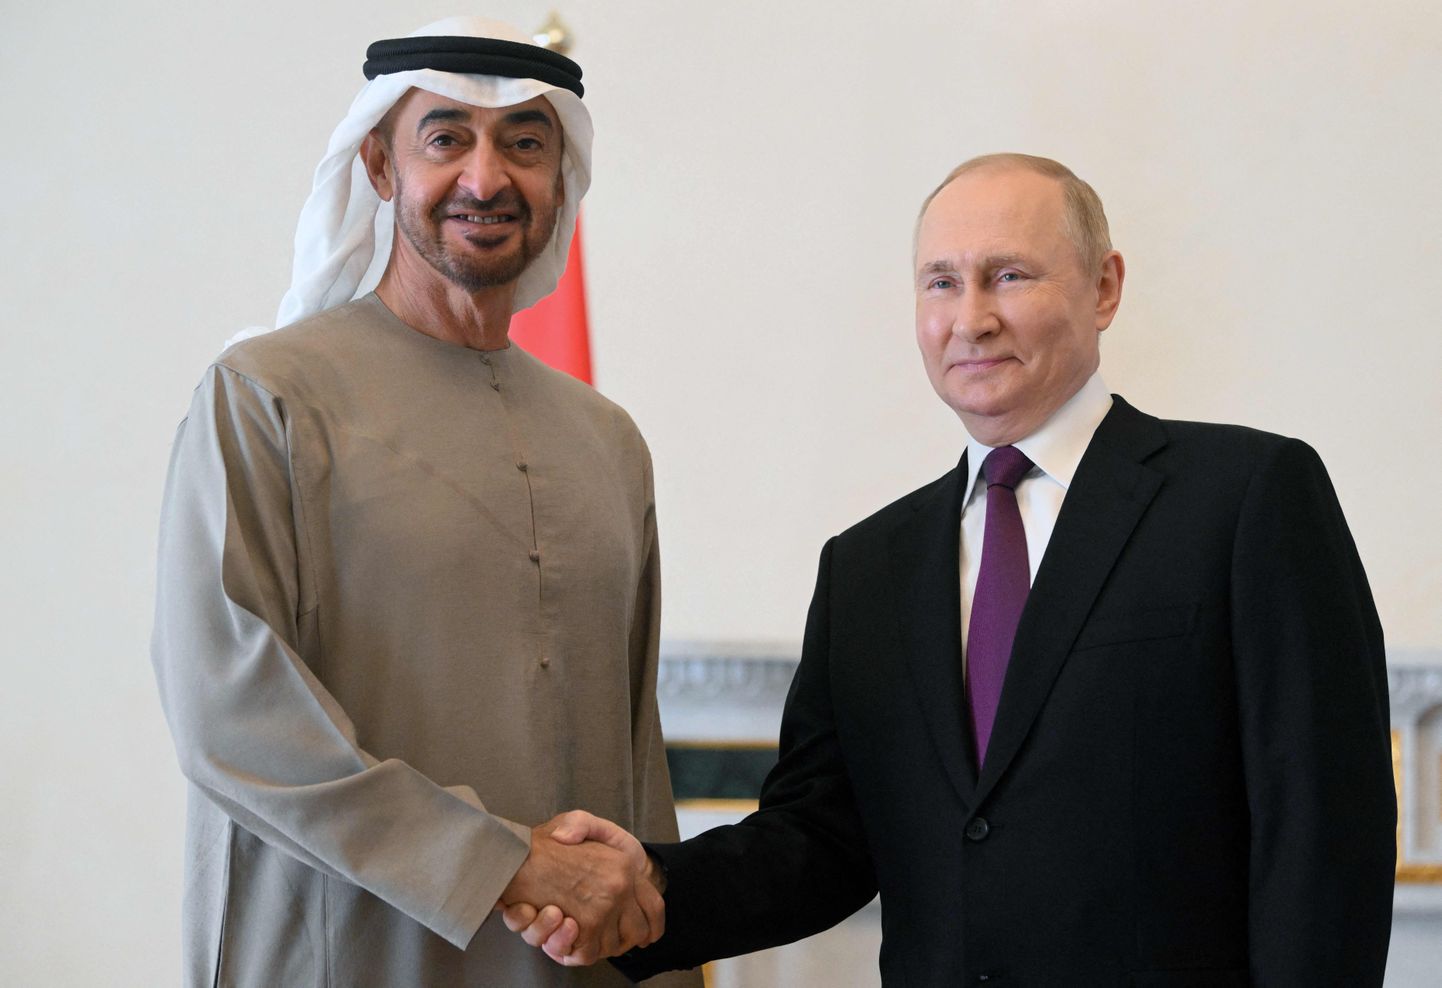 Venemaa president Vladimir Putin (paremal) ja Araabia ühendemiraatide president šeik Mohammed Bin Zayed Al Nahyan kohtusid mullu 11. oktoobril ka Peterburis.